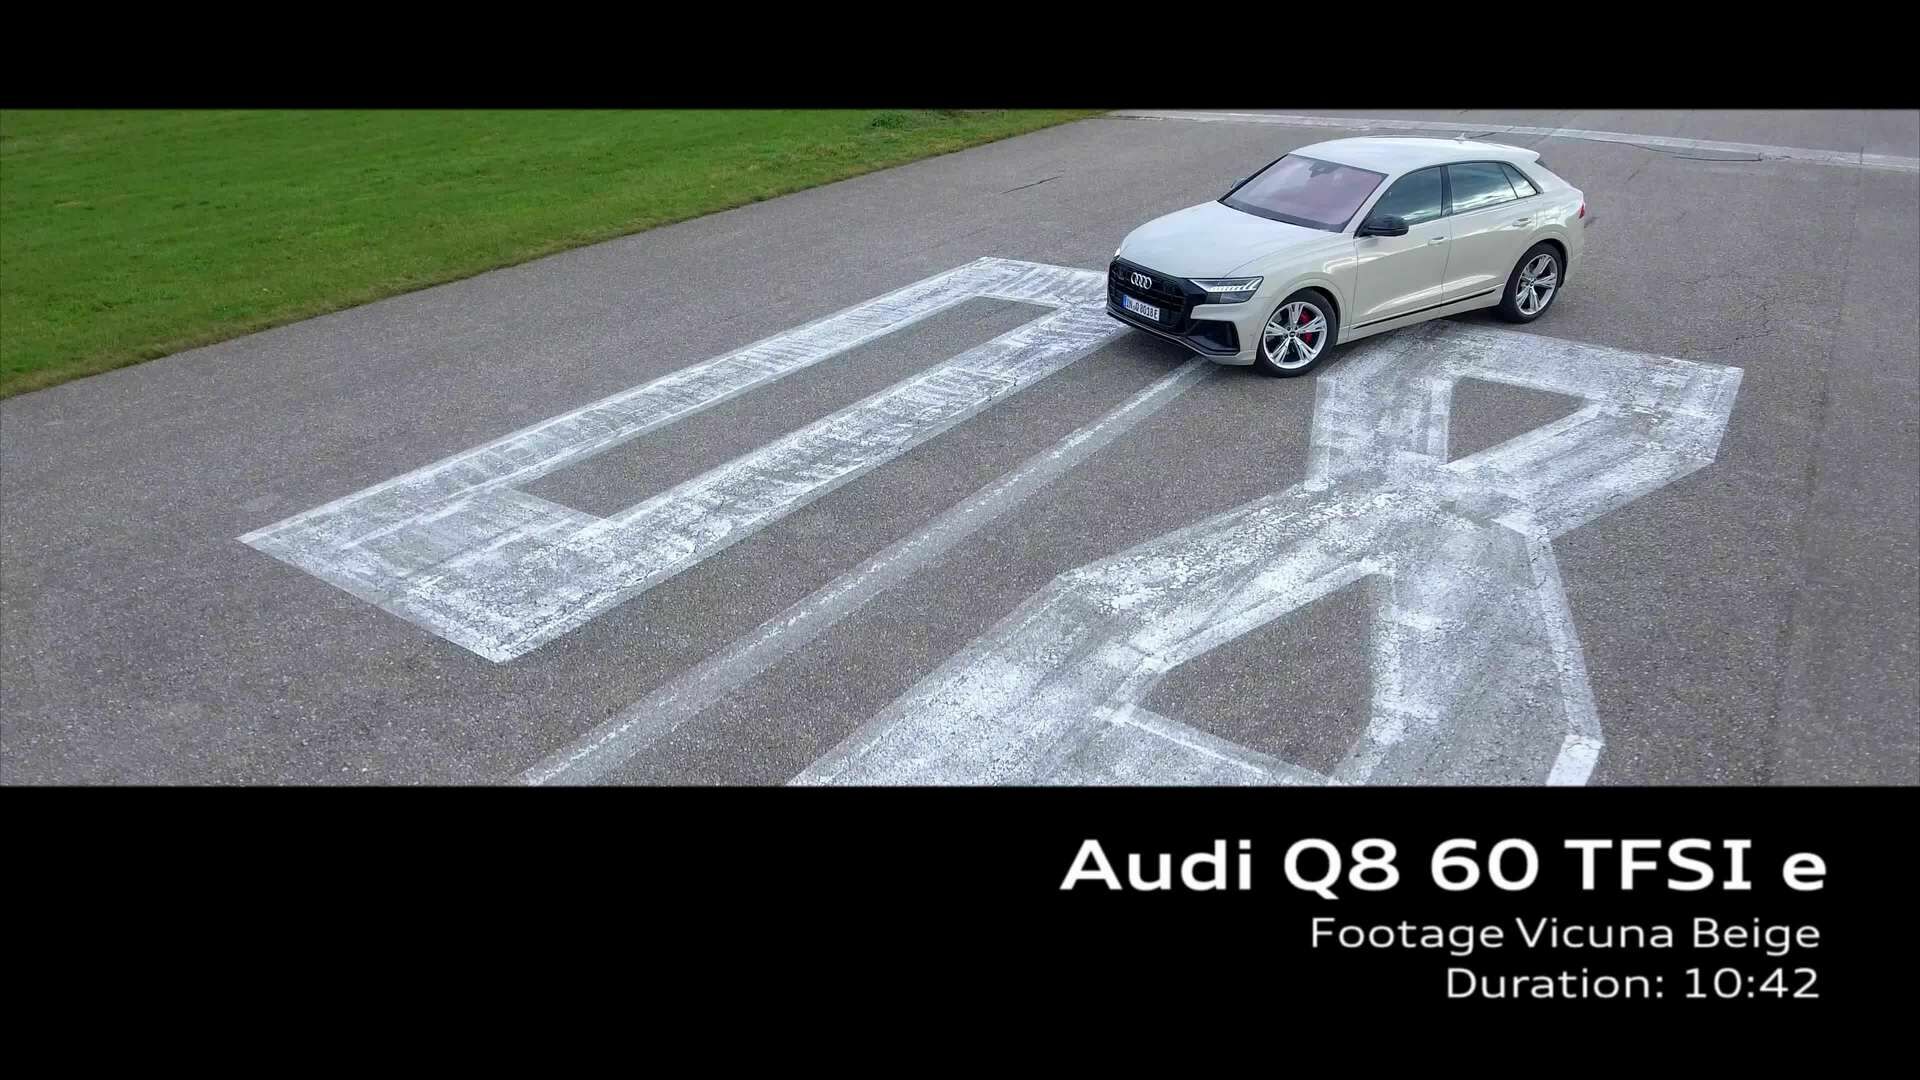 Footage: Audi Q8 TFSI e Vicuna beige